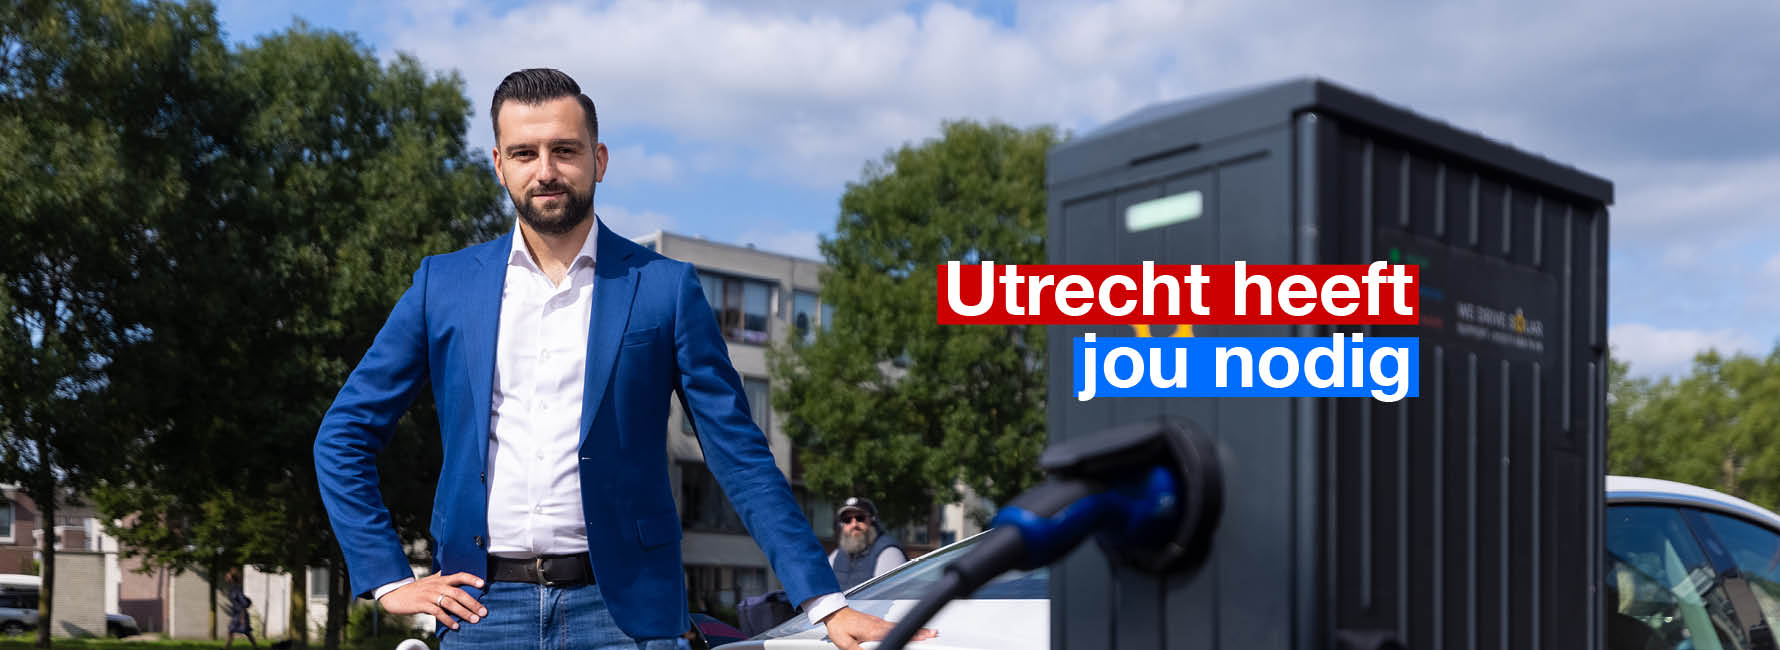 Een man bij een laadplek voor elektrische auto's. In beeld staat de tekst Utrecht heeft jou nodig.